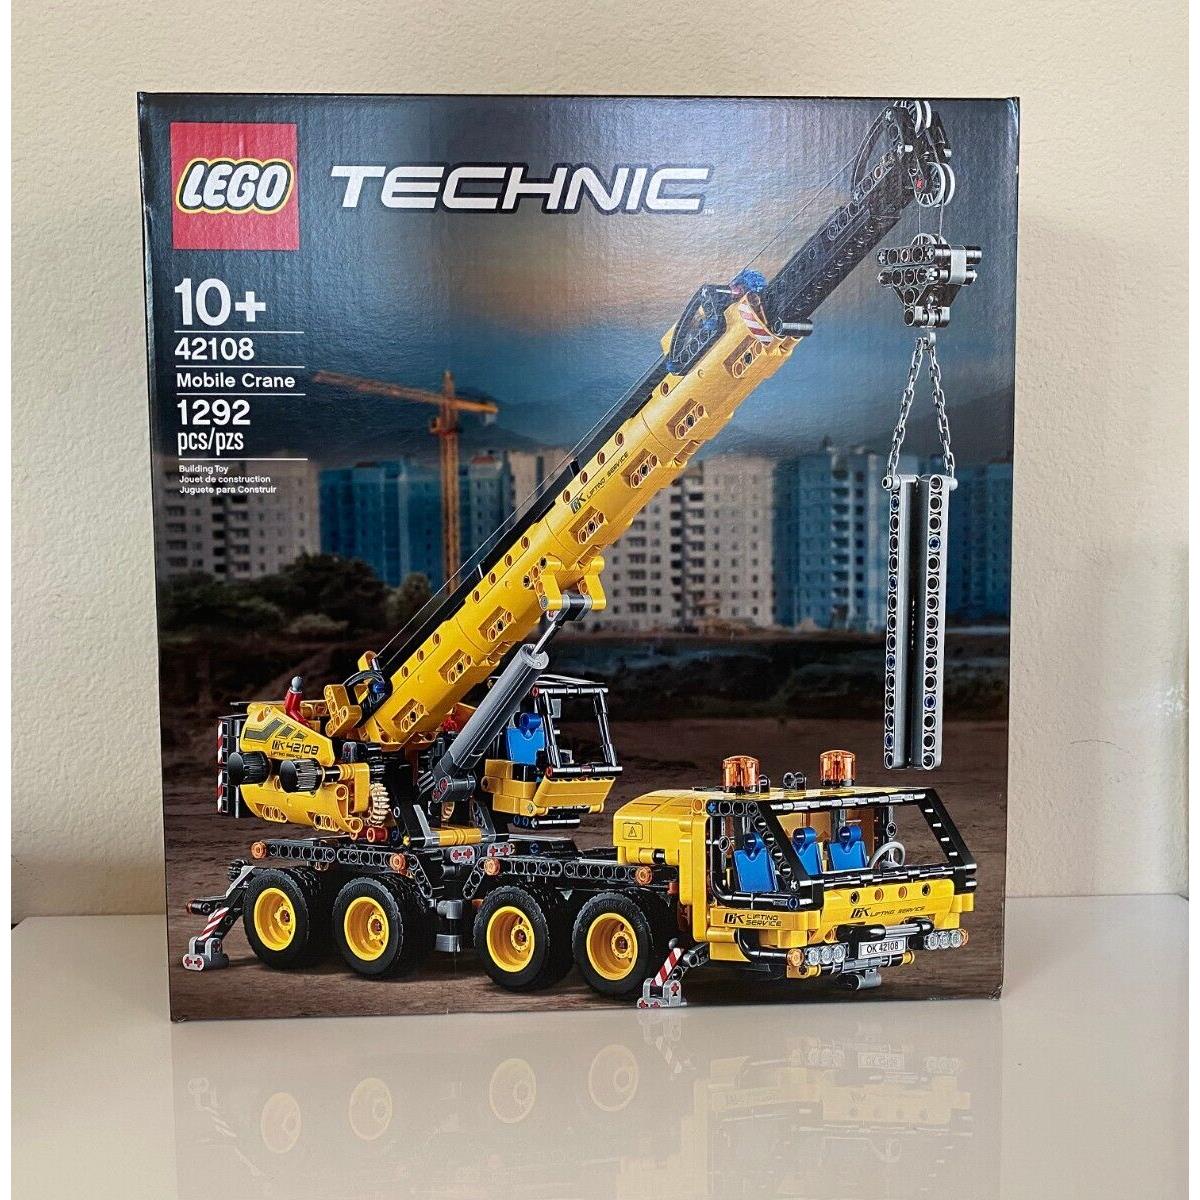 Lego Technic Mobile Crane Construction Machine Building Kit 42108 - 1 292 Pieces